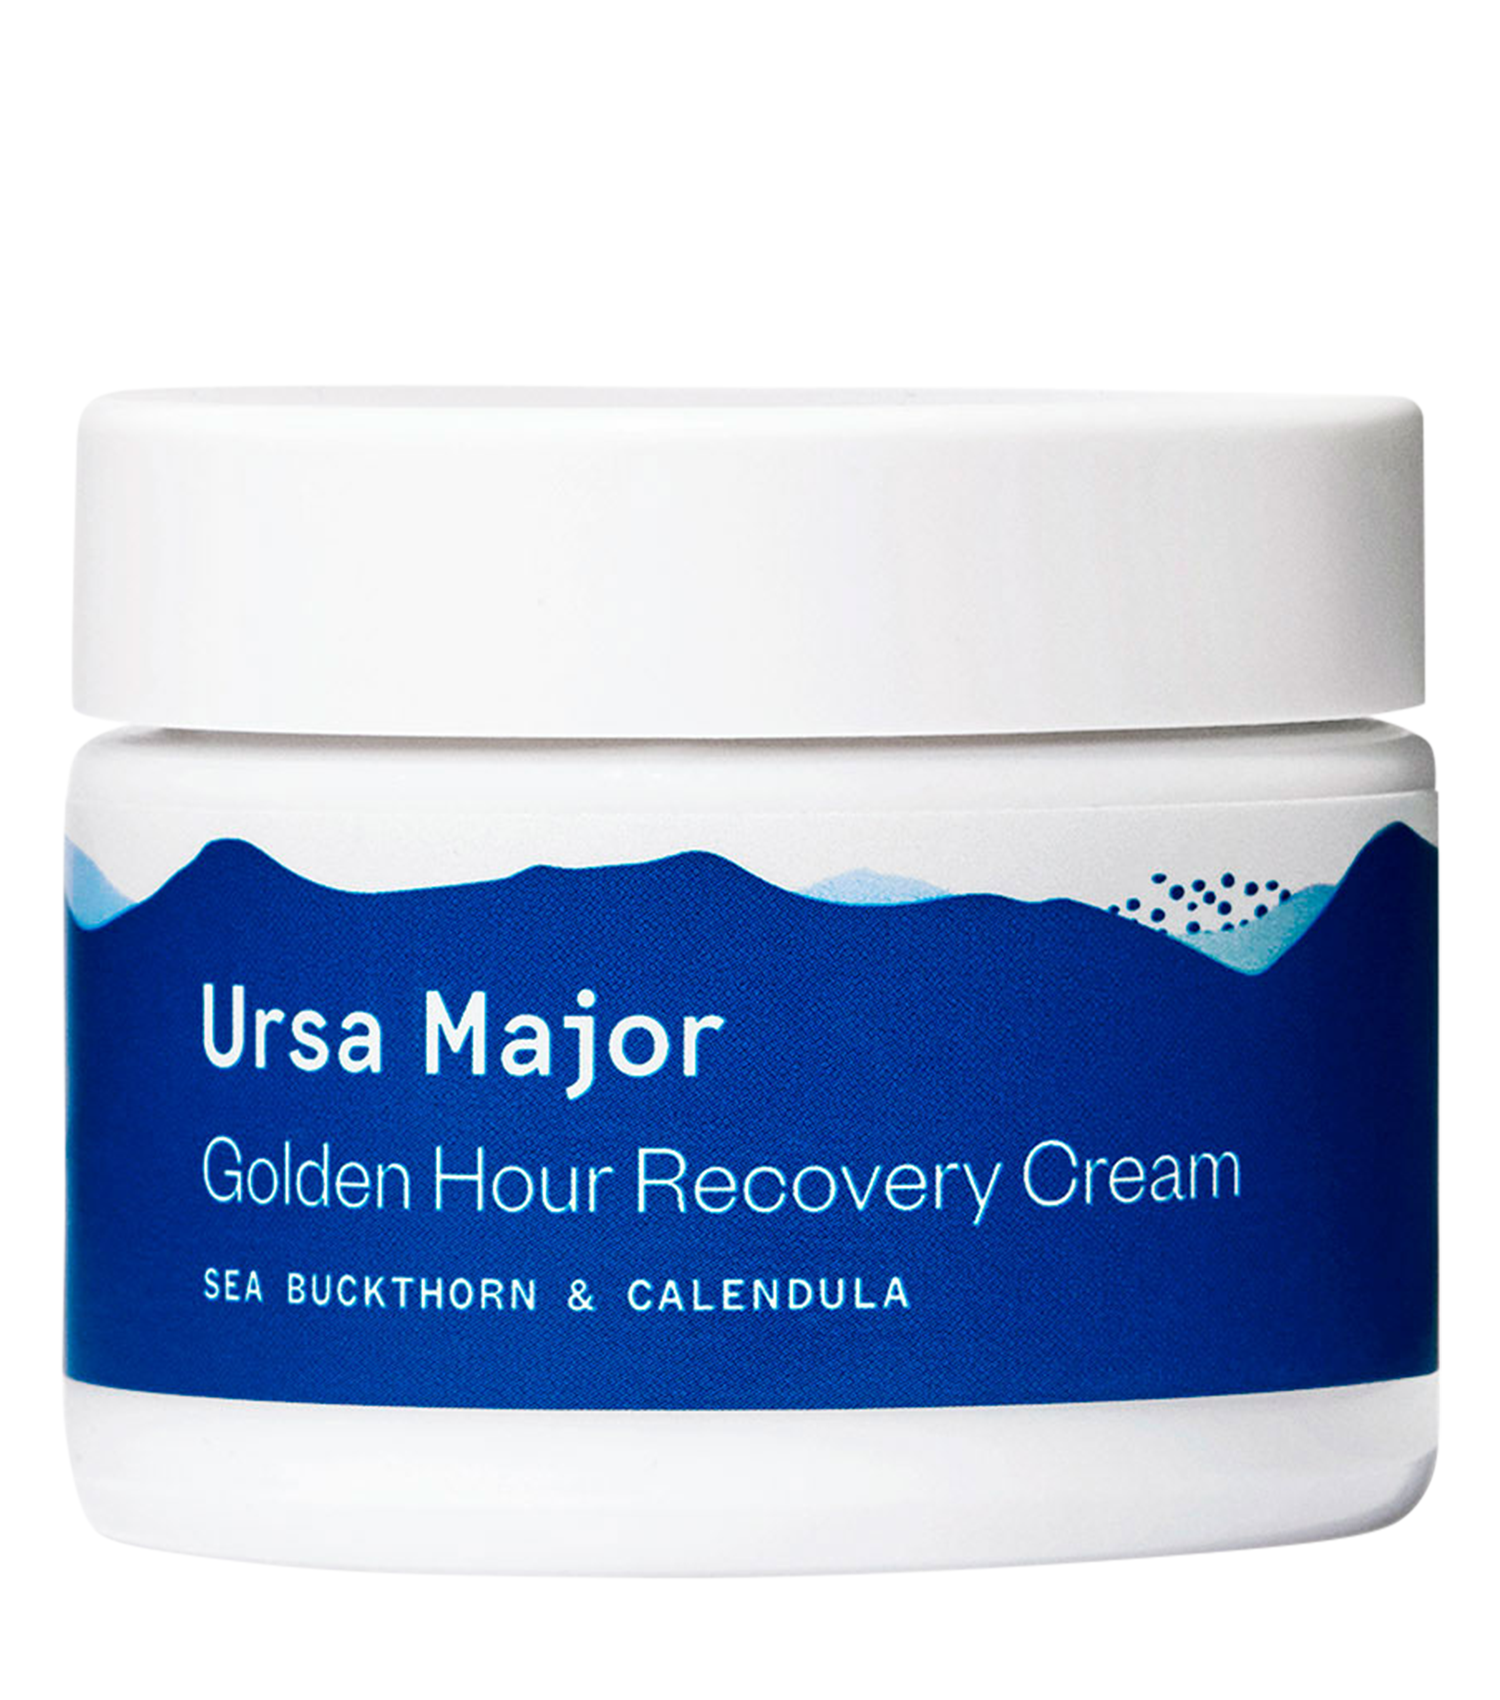 Ursa Major Golden Hour Recovery Cream (reformulated)